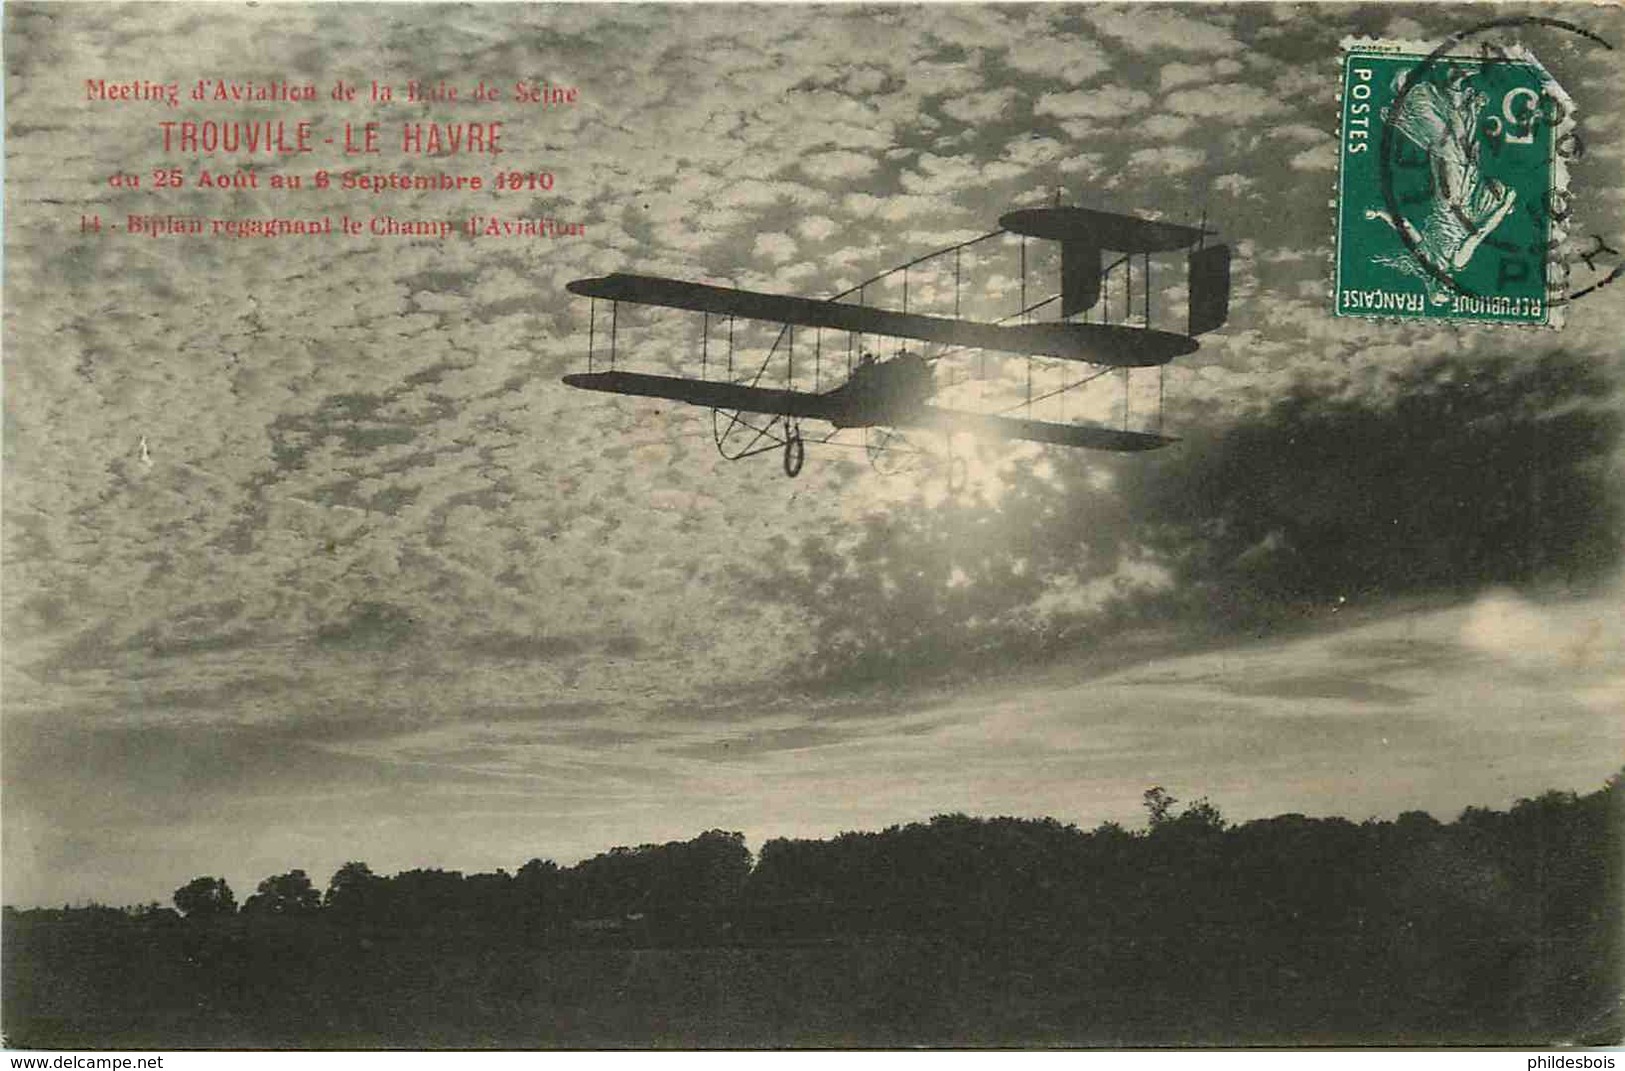 MEETING AVIATION DE LA BAIE DE SEINE  TROUVILE  LE HAVRE  Biplant Regagnant Le Champ D'aviation - 1914-1918: 1a Guerra